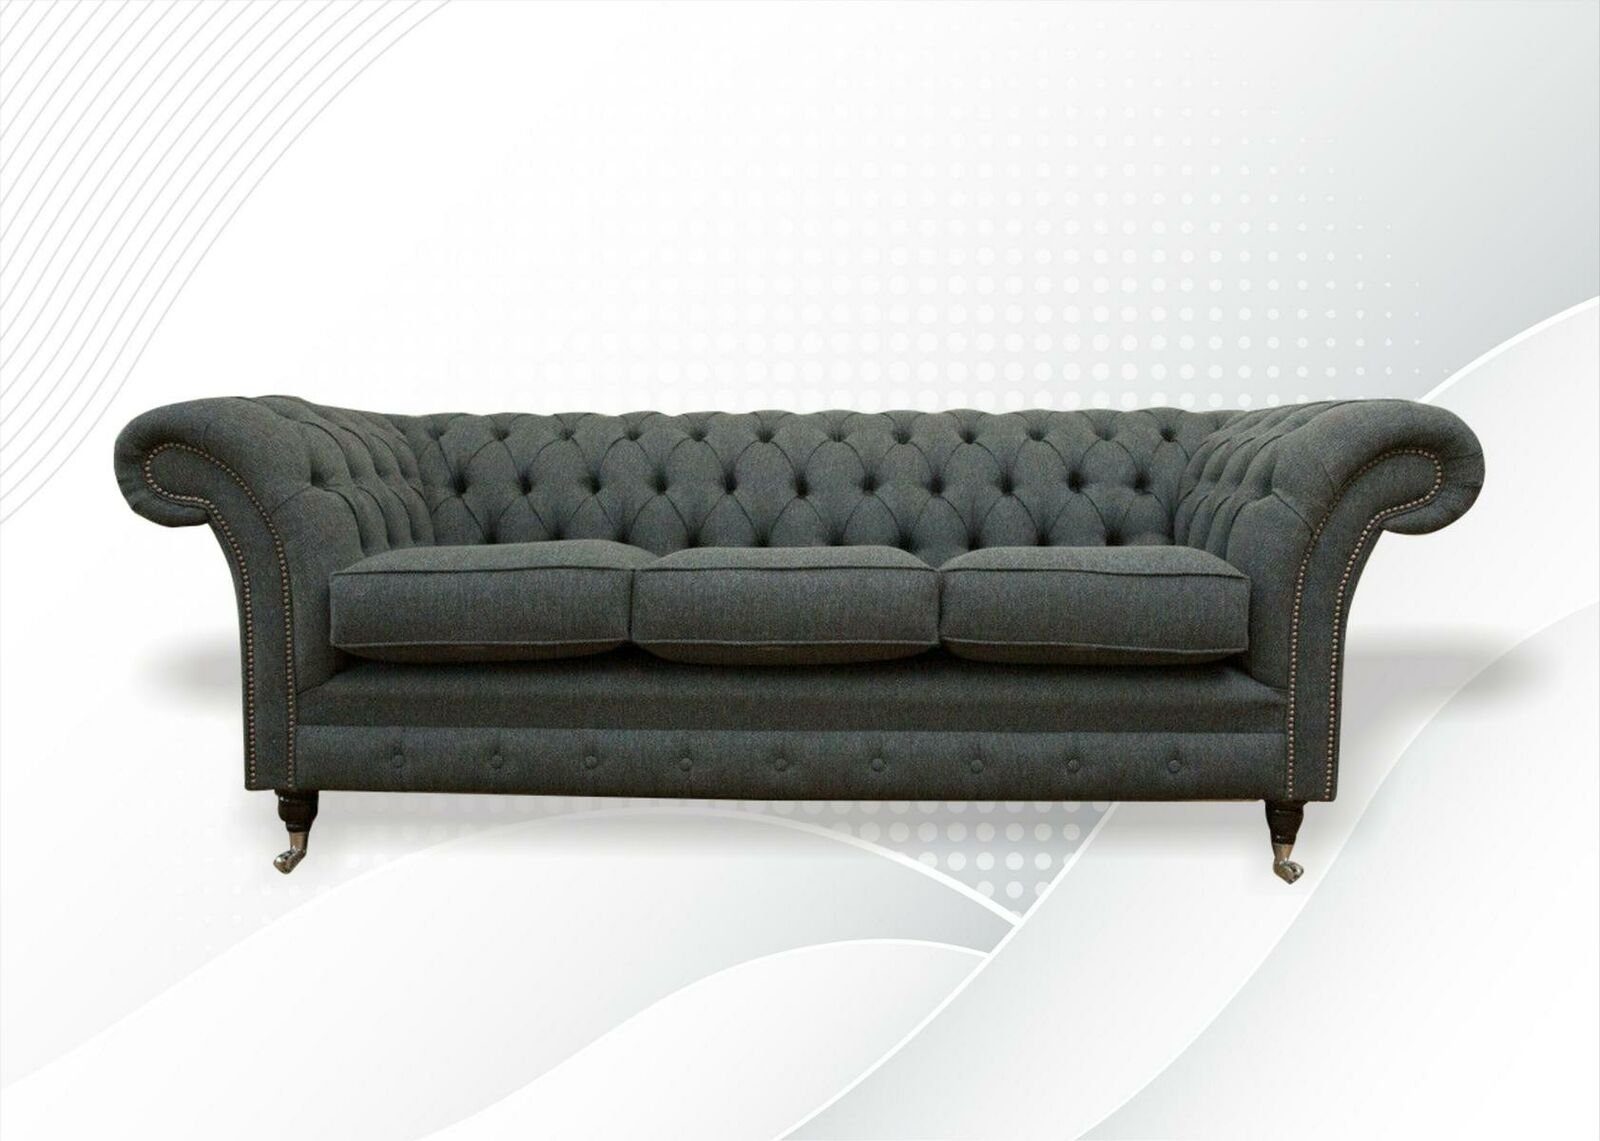 Grauer Chesterfield Luxus Chesterfield-Sofa Couch Europe Polstermöbel Made Neu, in 3-er JVmoebel Dreisitzer